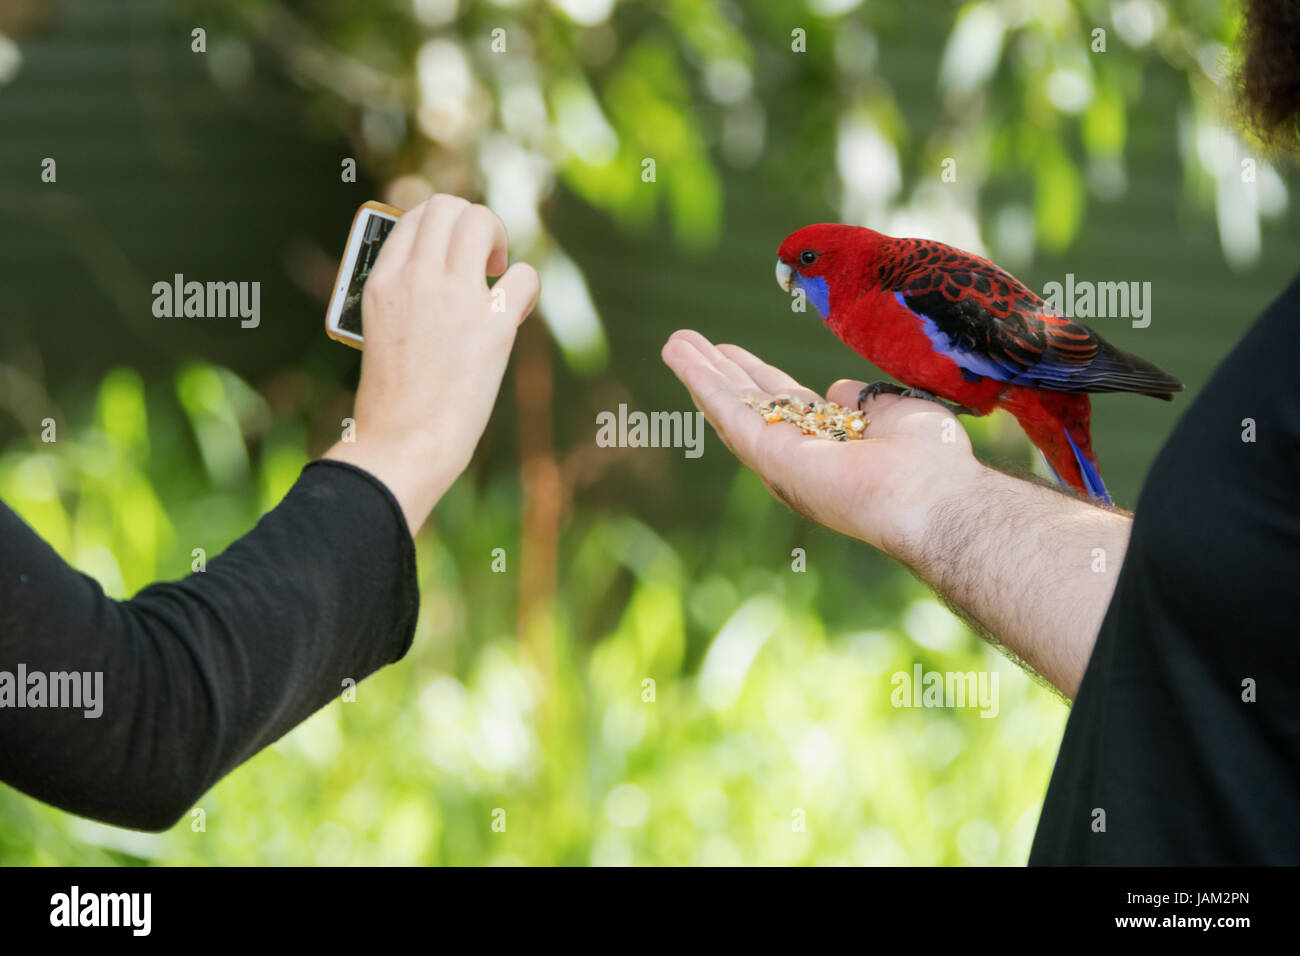 Red australian Parrot essen Samen aus einem Touristen Hand, während ein anderer Tourist nimmt ein Foto mit einem Telefon Stockfoto